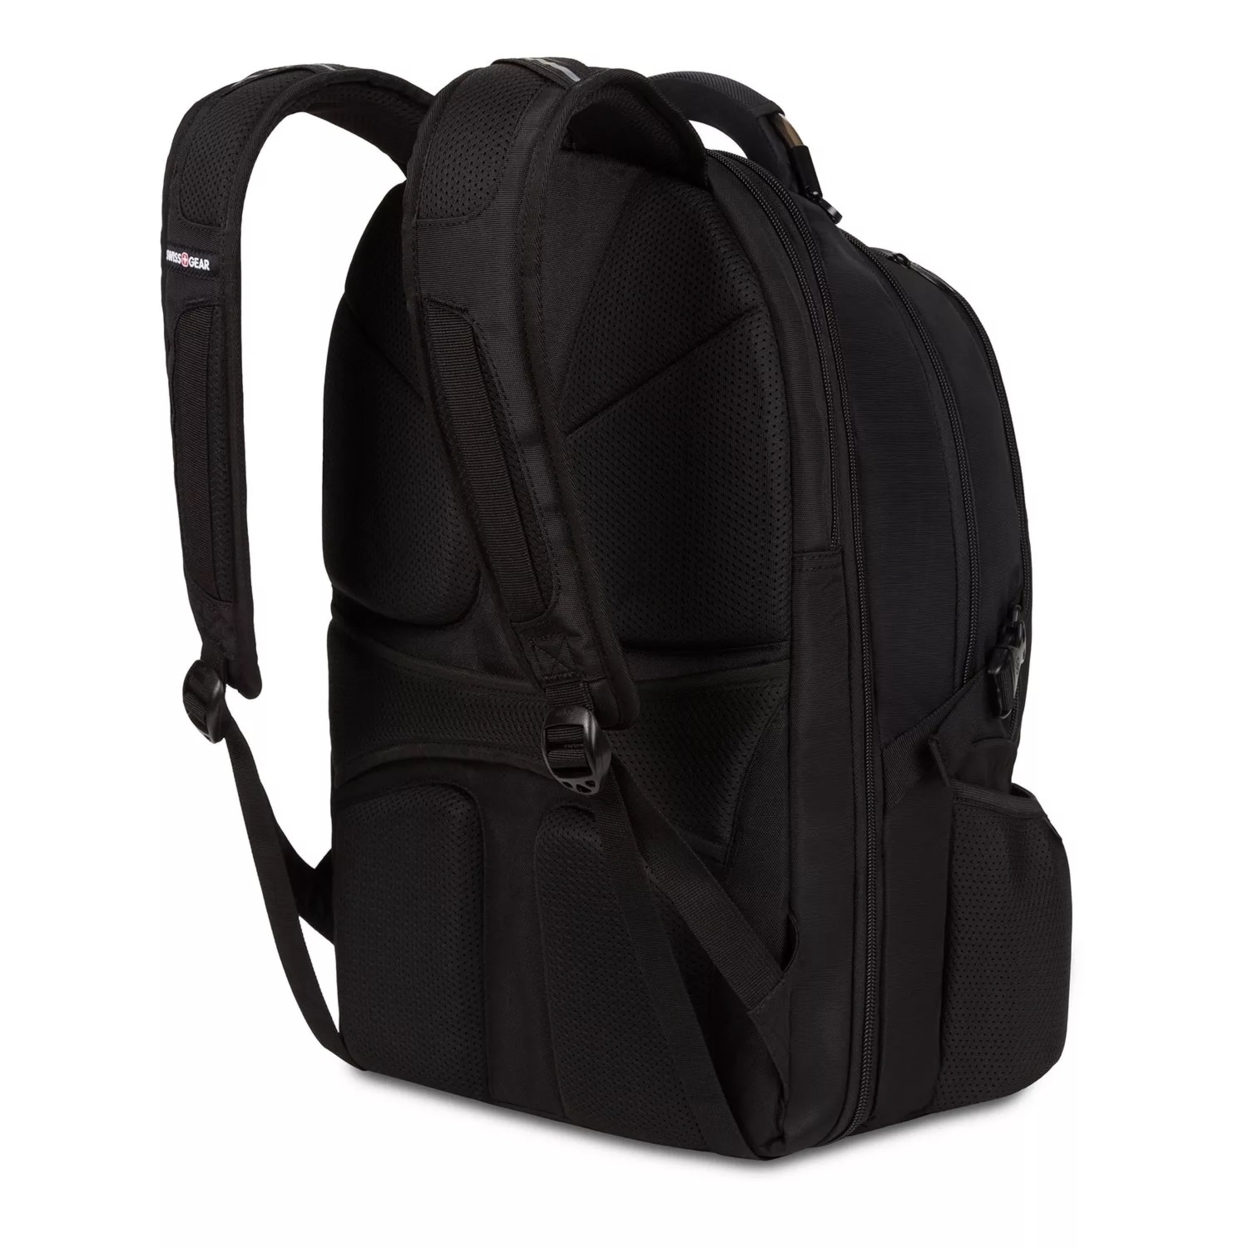 Swissgear 3760 ScanSmart Laptop Backpack, Black